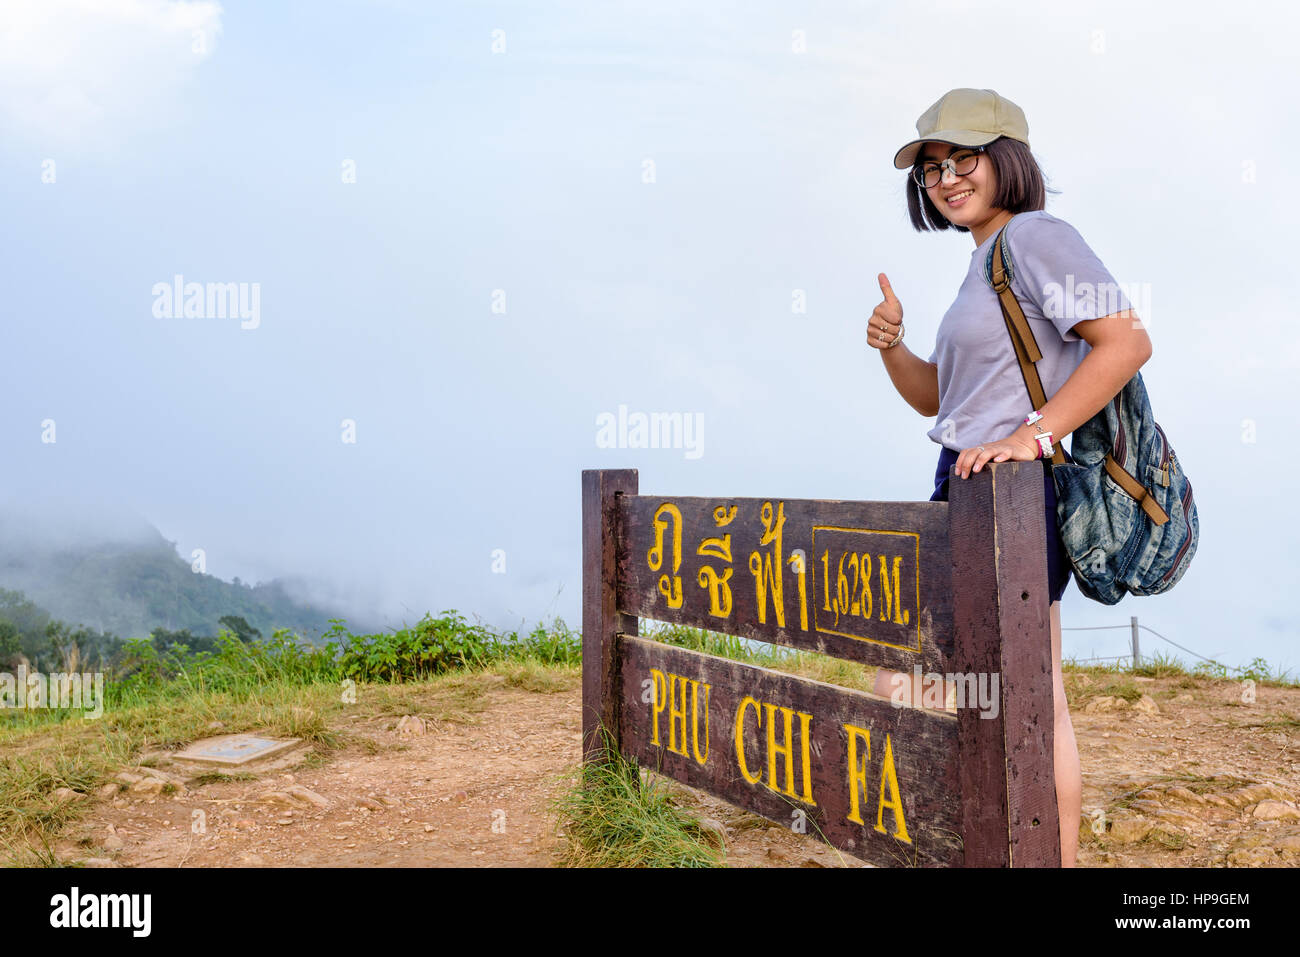 Turista jovencita excursionista tapa de desgaste y gafas con mochila sonriendo pulgar arriba, cerca de las atracciones de placa de Phu Chi Fa Forest Park en montaña y niebla Foto de stock